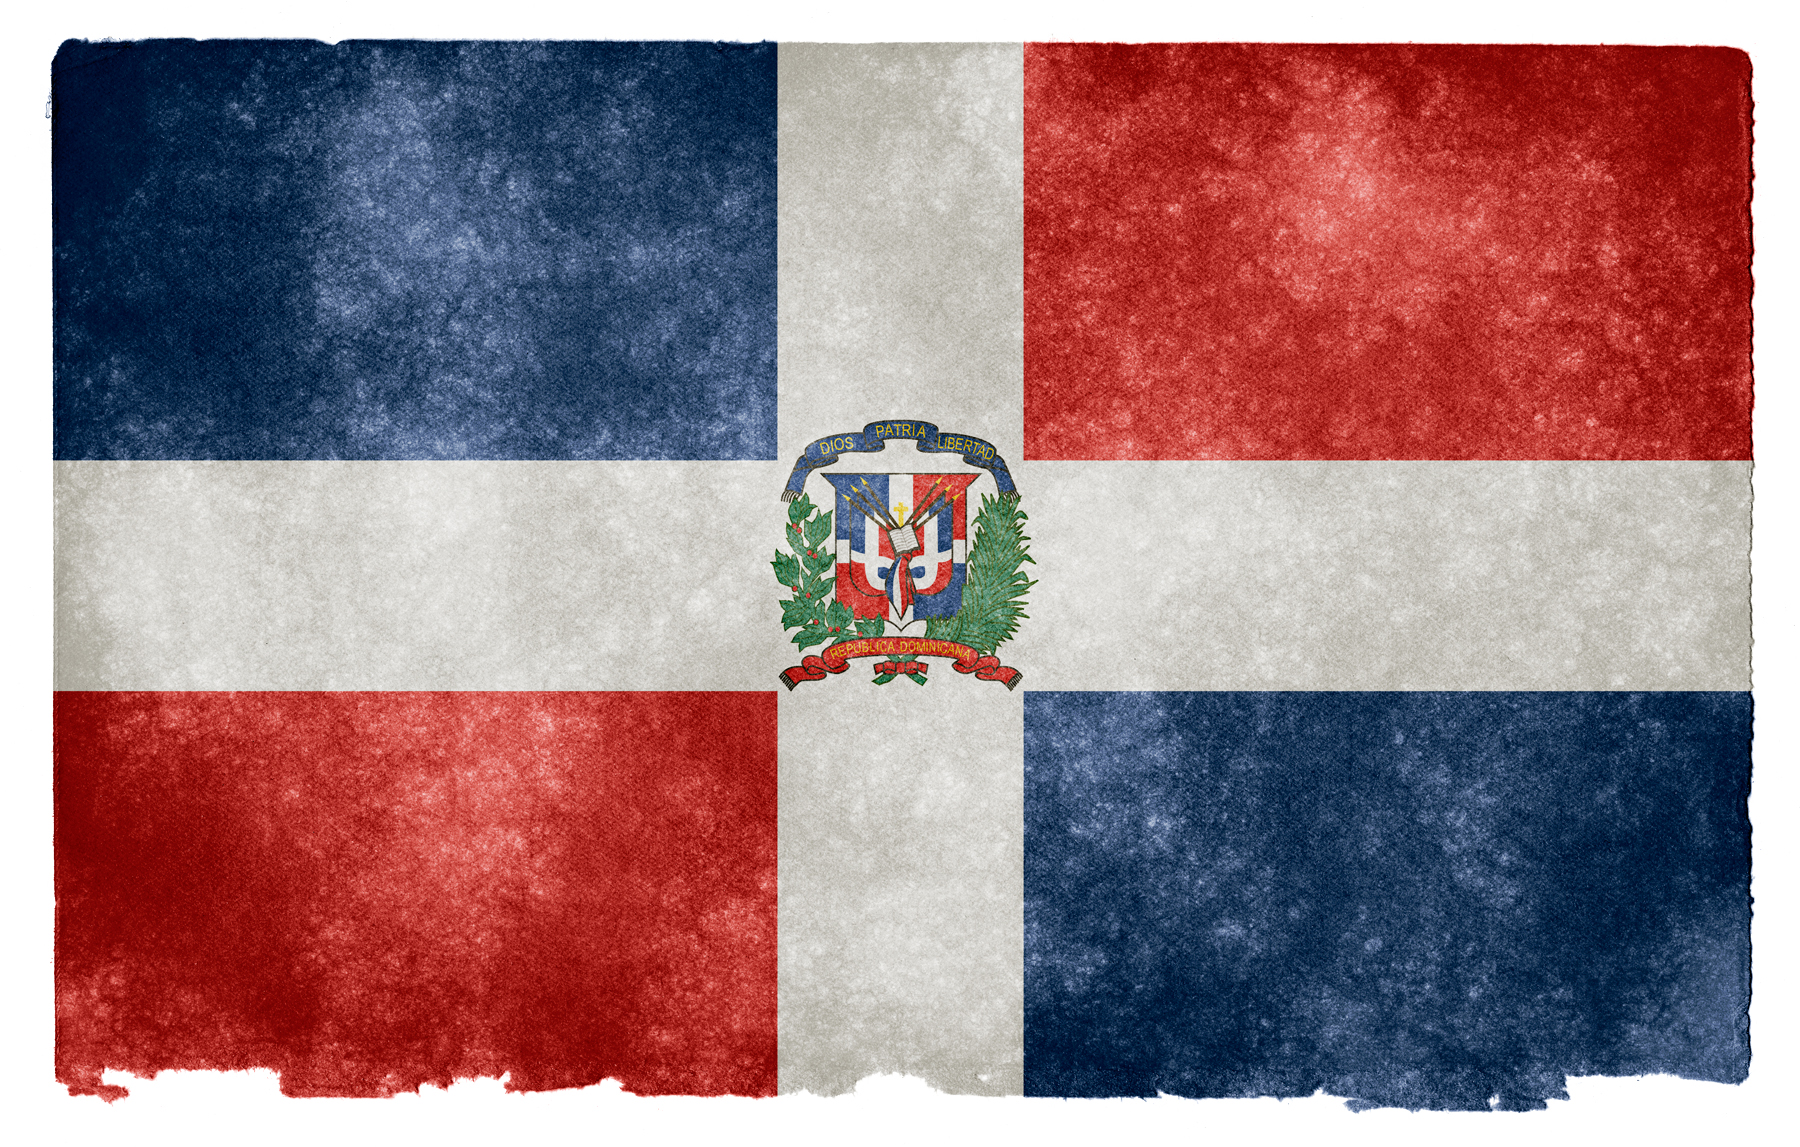 Cancillería de Rep. Dominicana impulsa el uso del merengue como su marca país